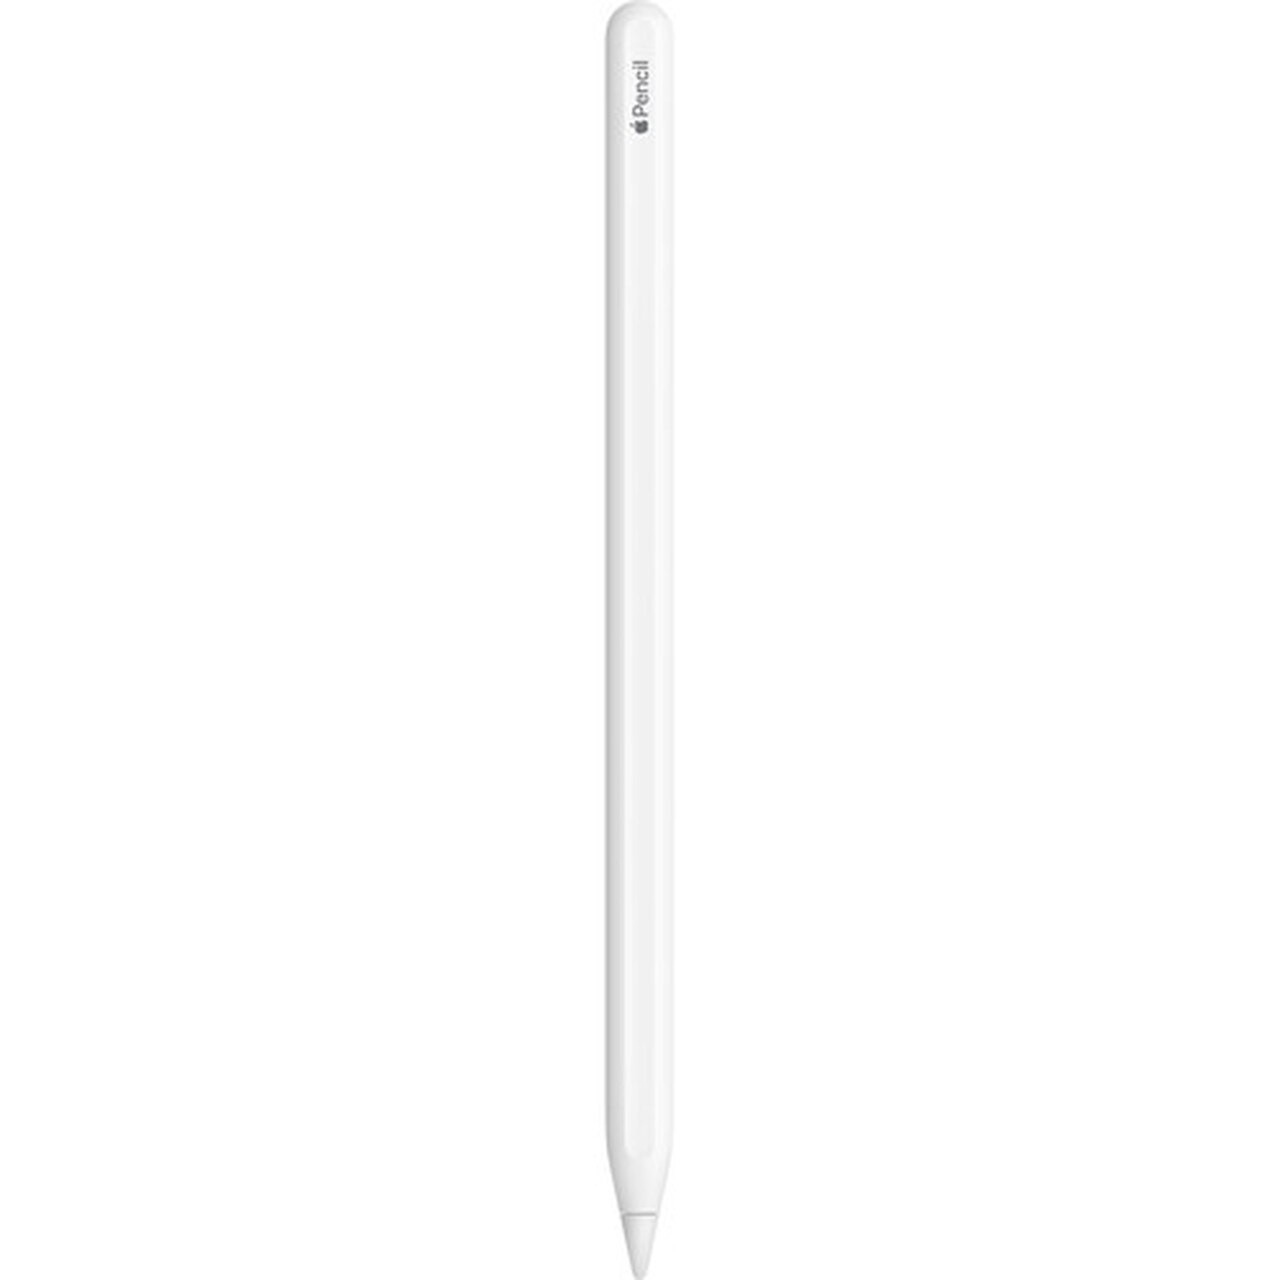 Apple Pencil (2nd Gen) - Mac Me an Offer